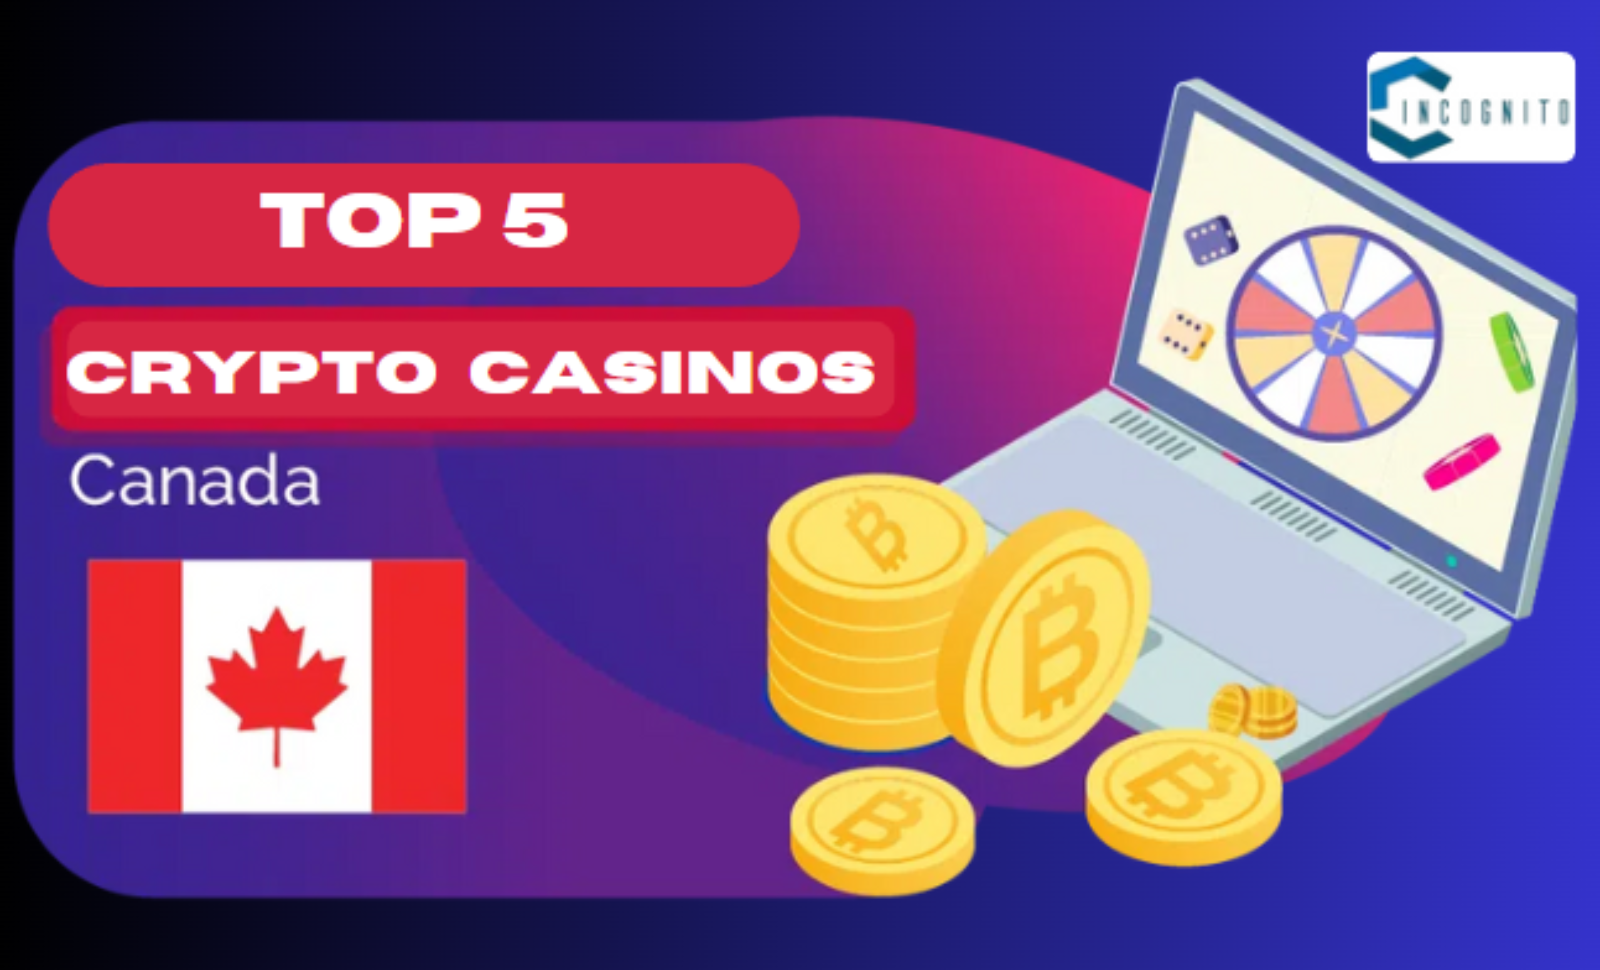 Top 5 Crypto Casinos in Canada